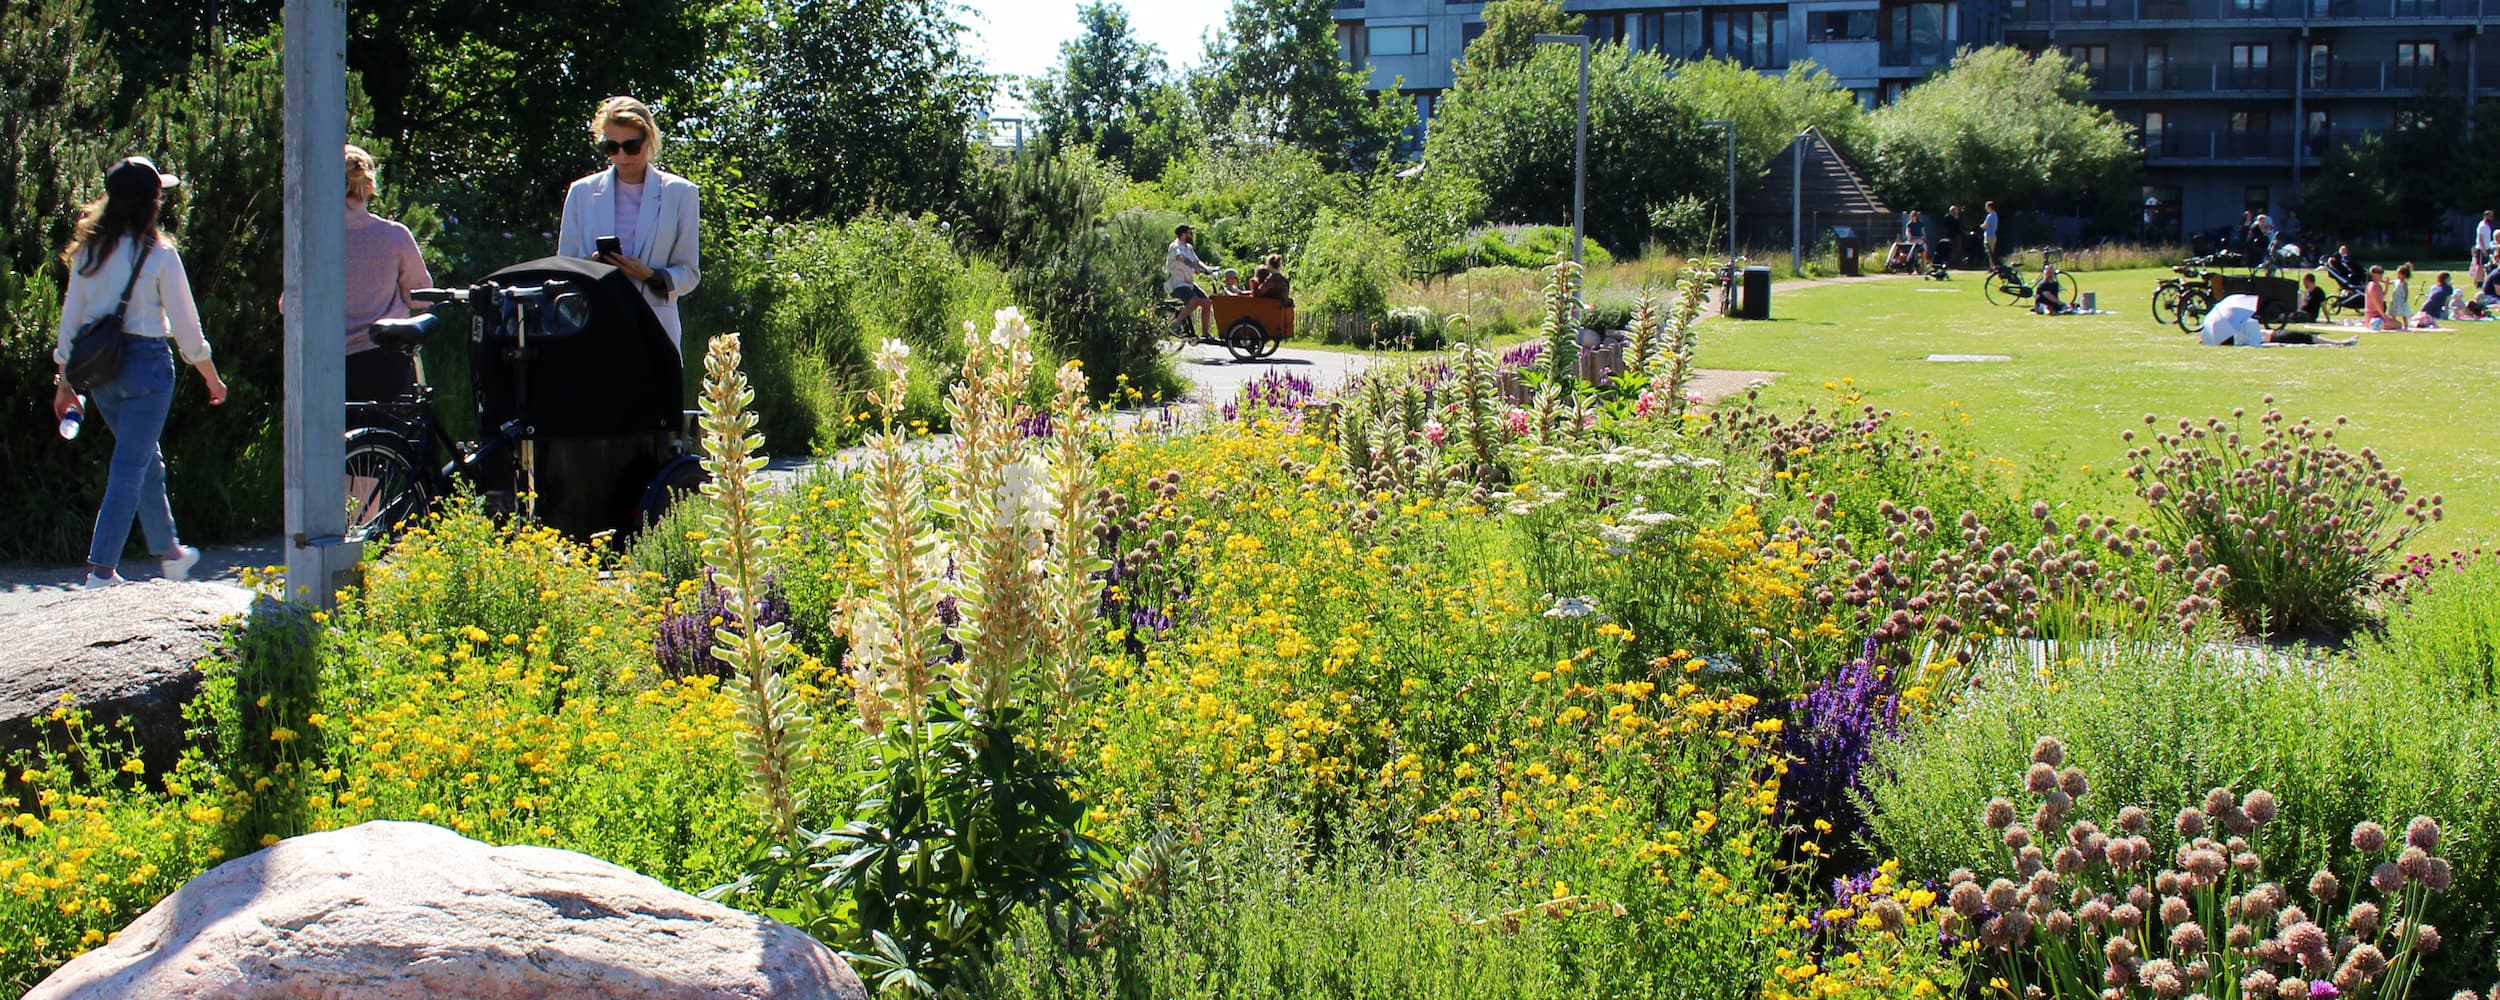 Grønningen i Ørestad Nord er en unik bypark. På billedet ses flere elementer i samspil; insektvenlig beplantning i fuldt flor, et stisystem til hhv. cyklister og gående og en plæne med plads til ophold og bevægelse.